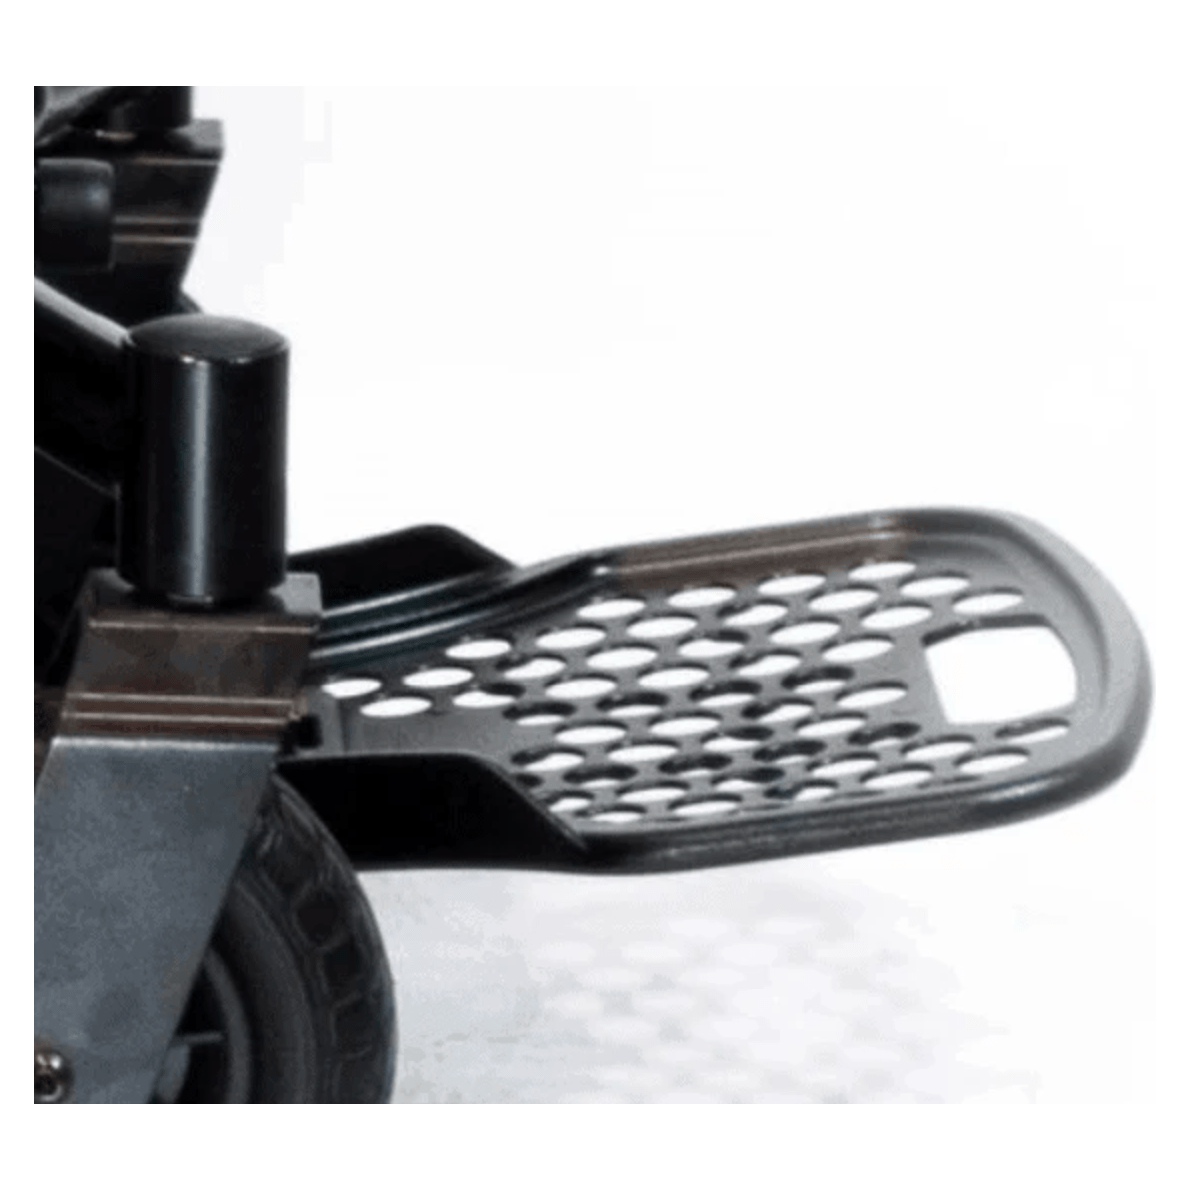 Shoprider 6 Runner 10 Mid-Size Electric Power Wheelchair 888WNLM Wheelchairs Shoprider   